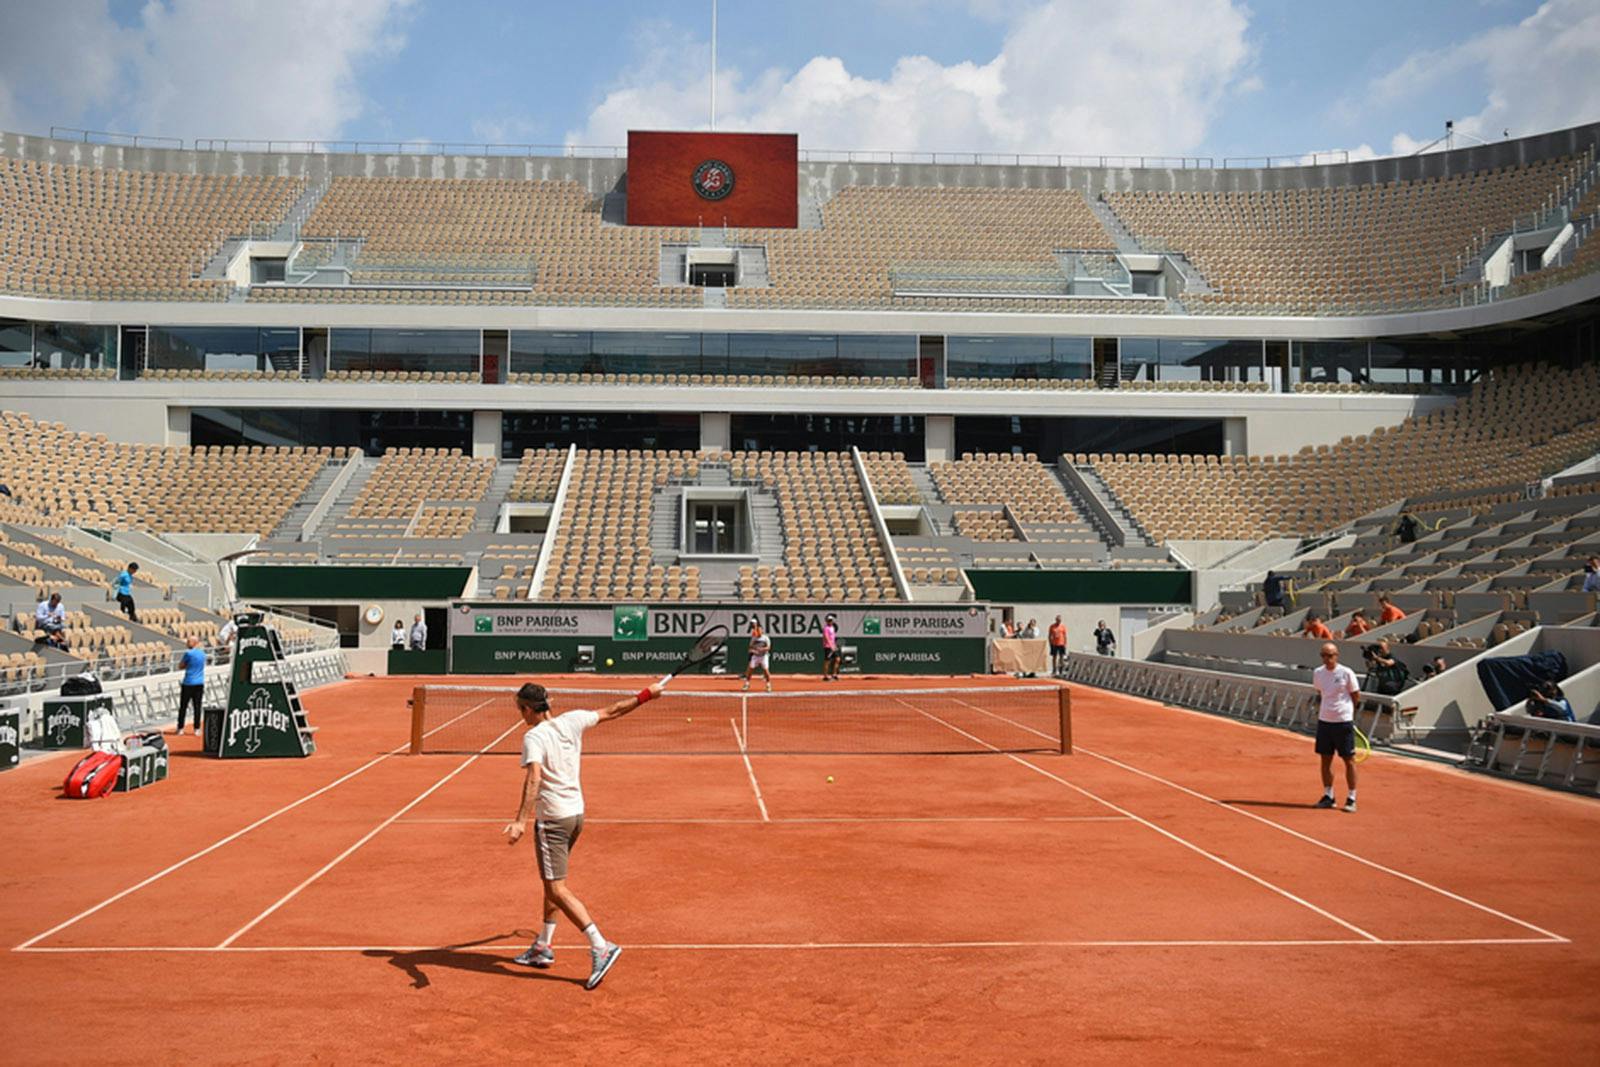 Roger Federer practice